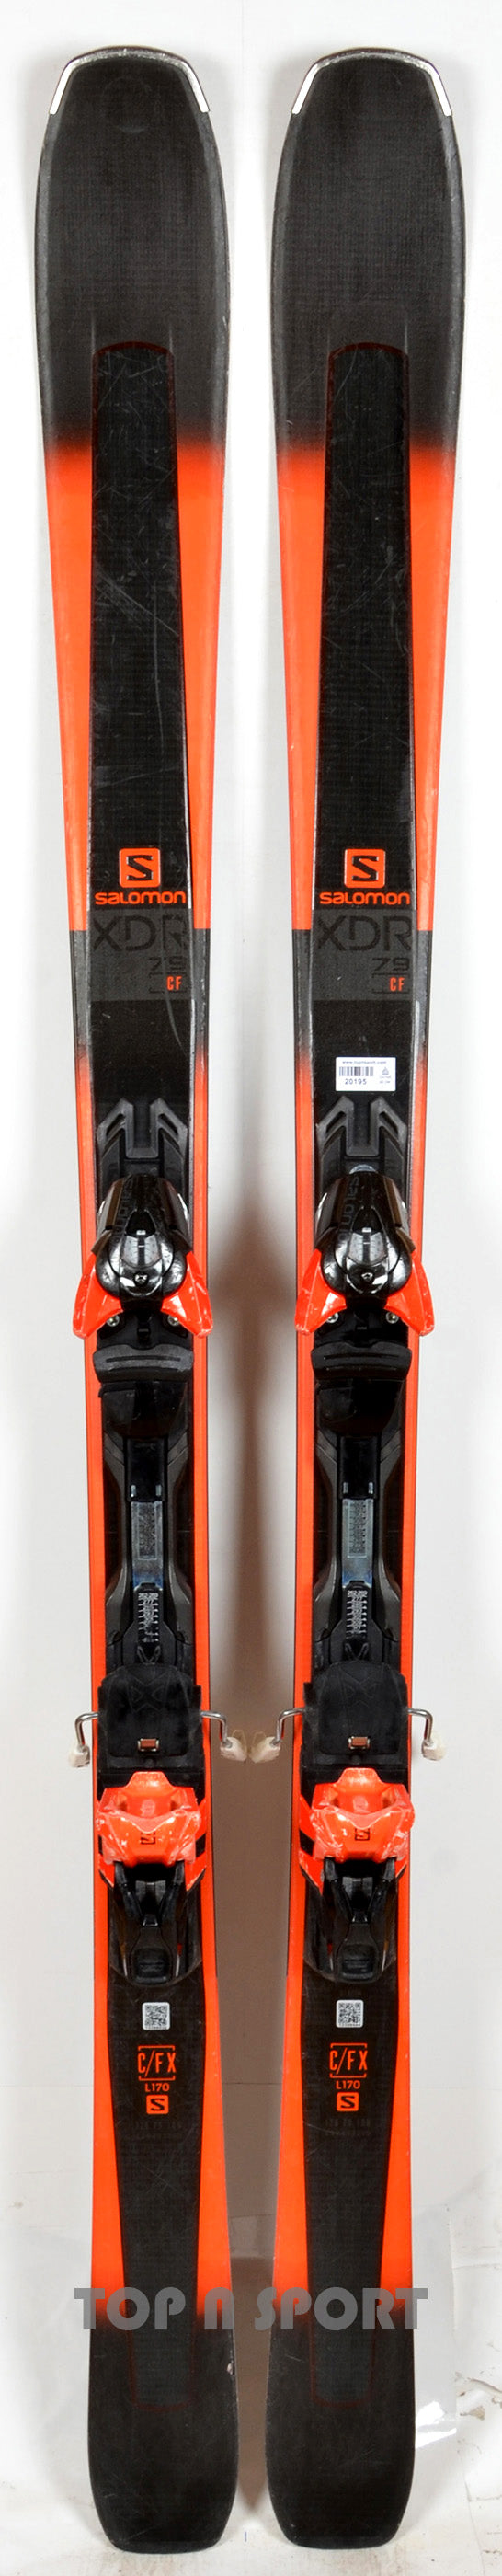 Salomon XDR 79 CF - skis d'occasion – Top N Sport, du matériel de ski d'occasion